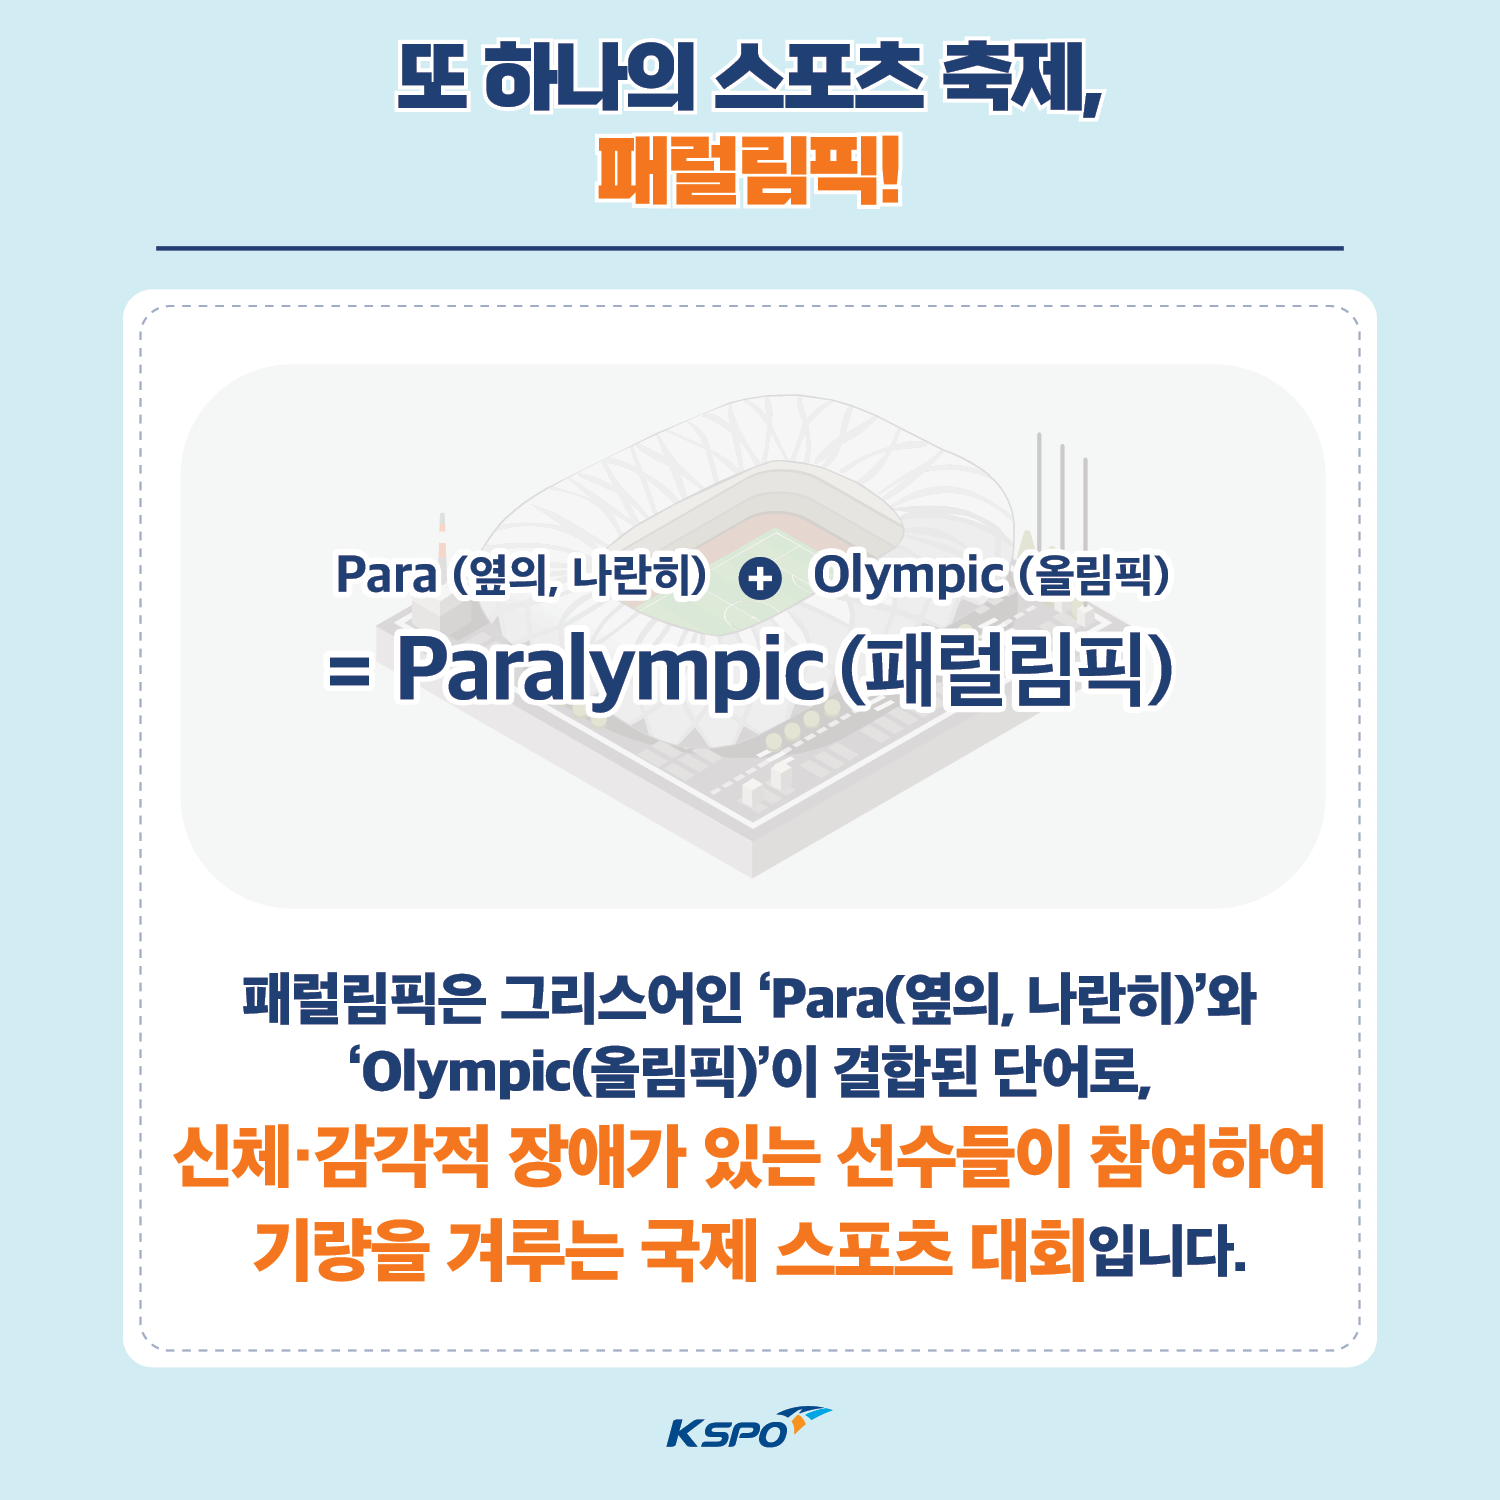 또 하나의 스포츠 축제, 패럴림픽!Para(옆의, 나란히) + Olympic(올림픽) = Paralympic(패럴림픽) 패럴림픽은 그리스어인 'Para(옆의, 나란히)'와 'Olympic(올림픽)'이 결합된 단어로, 신체·감각적 장애가 있는 선수들이 참여하여 기량을 겨루는 국제 스포츠 대회입니다. 국민체육진흥공단 로고